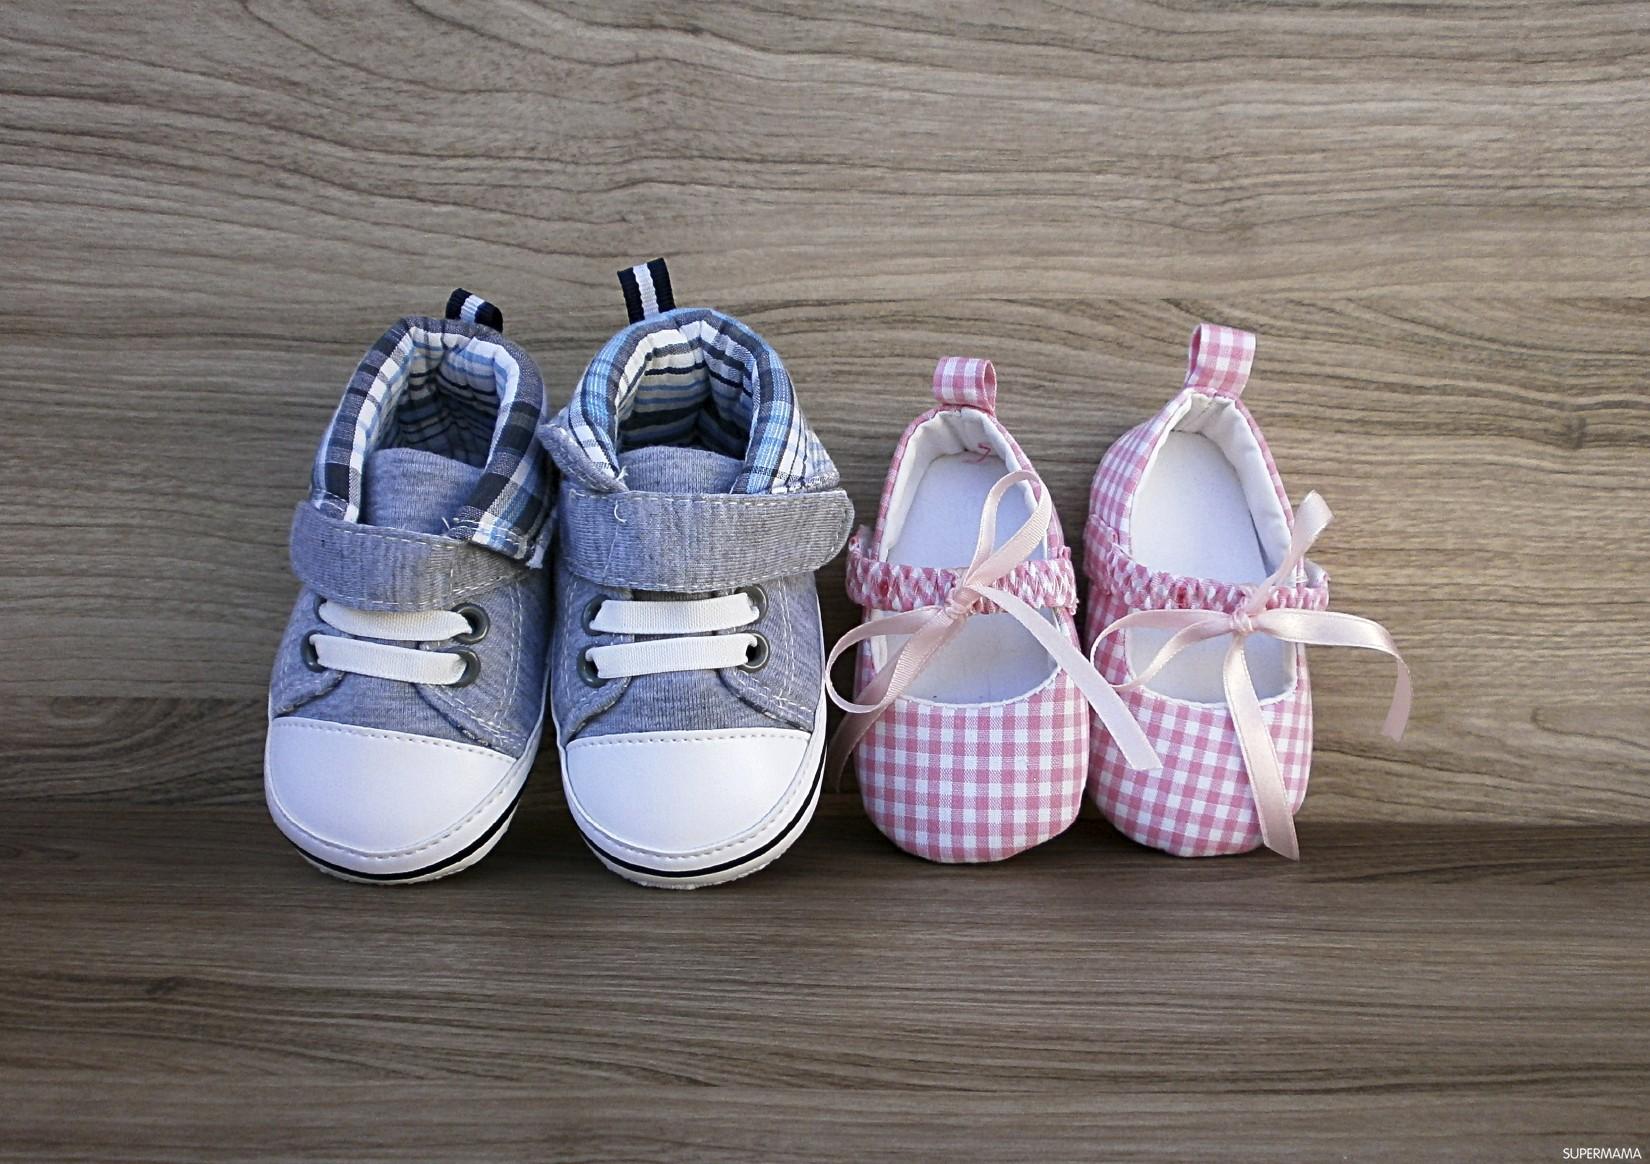  نصائح لاختيار أول حذاء للطفل.. 276526-%D8%AD%D8%B0%D8%A7%D8%A1